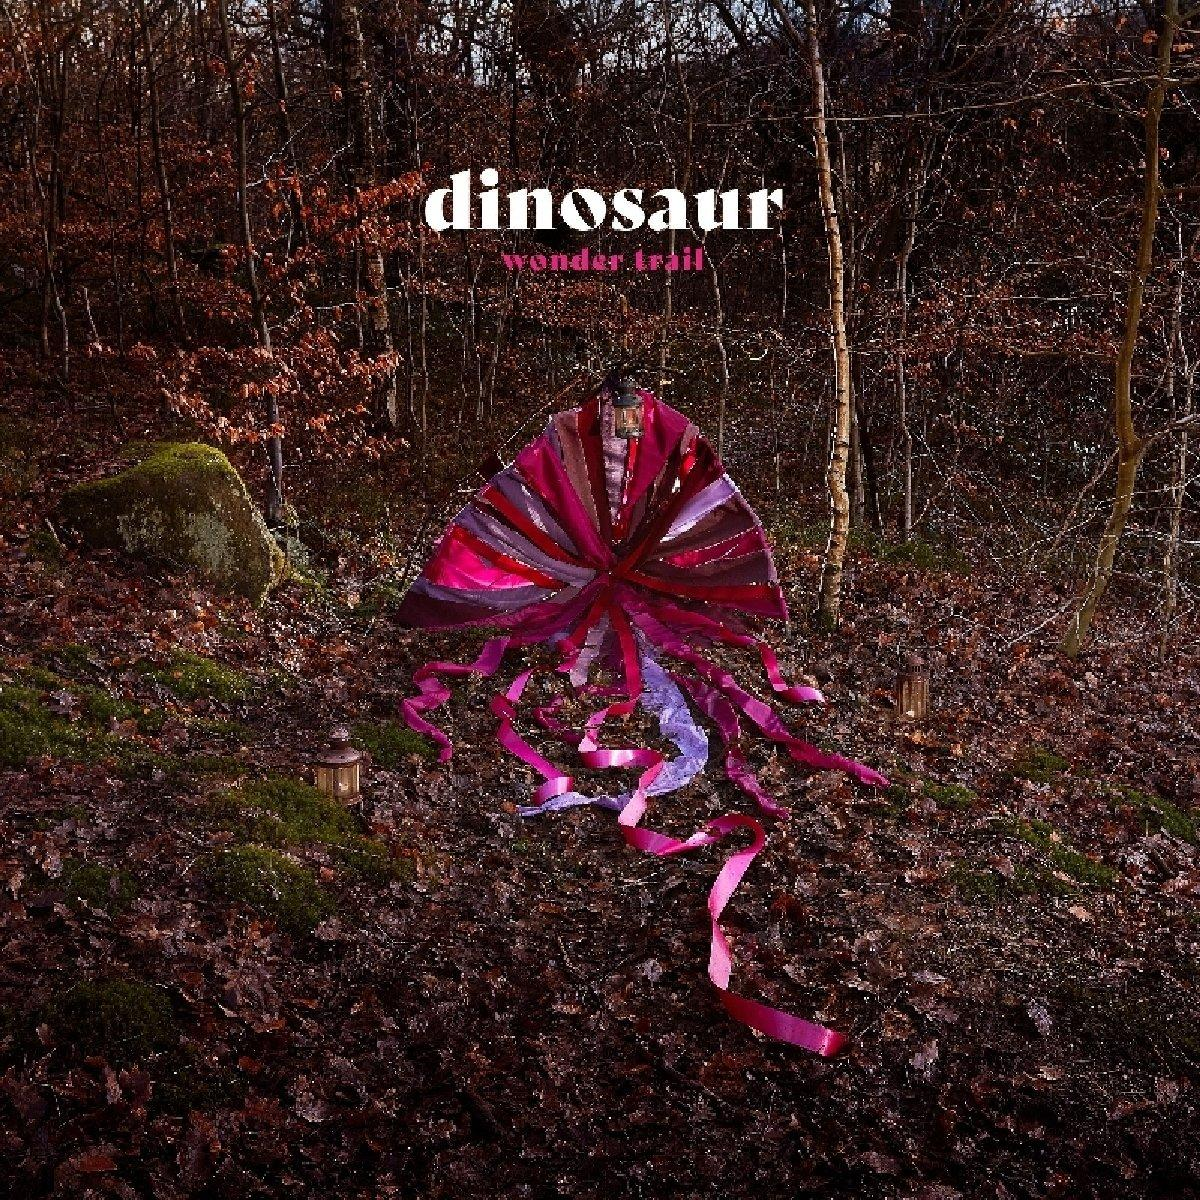 Trail - (Vinyl) Jr. Dinosaur - Wonder